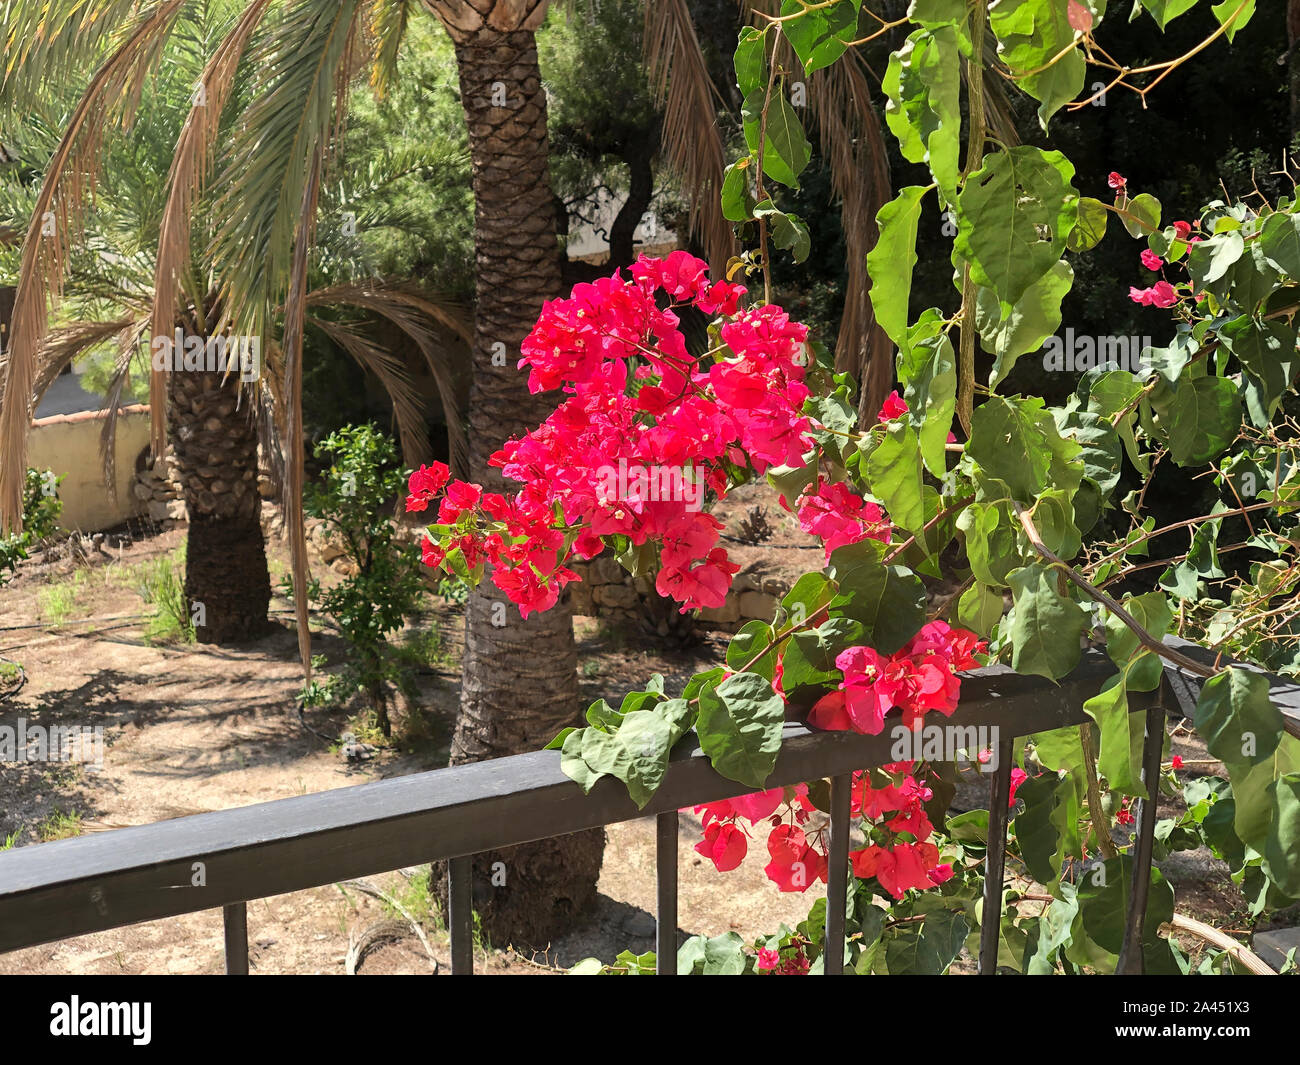 Bougainvillea flowers in a garden in Spain Stock Photo